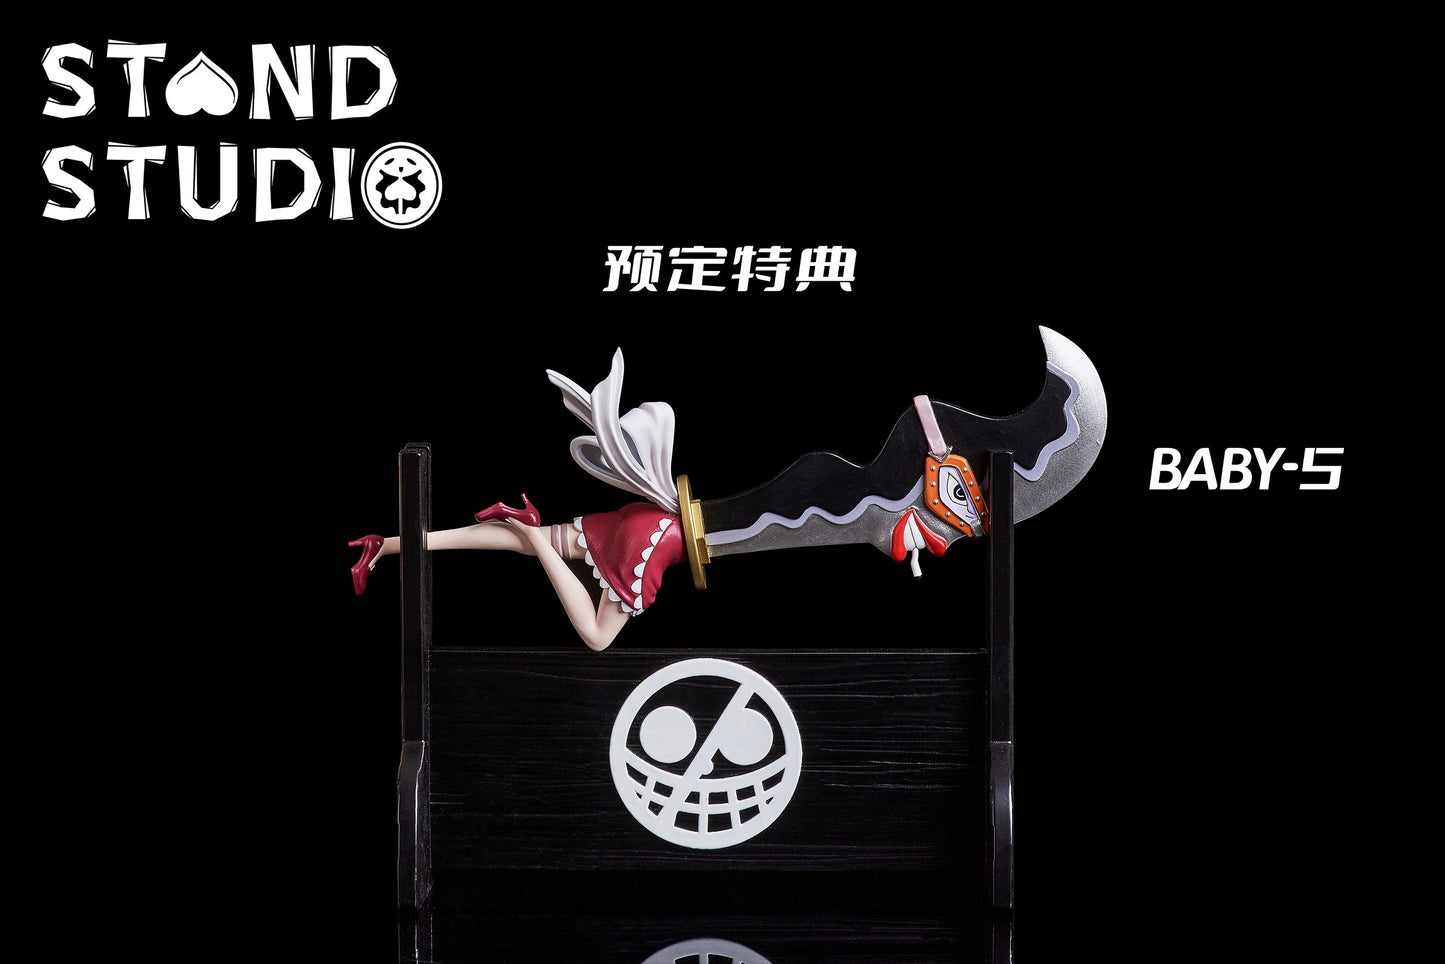 Stand Studio - Donquixote Pirates Buffalo [PRE-ORDER CLOSED]